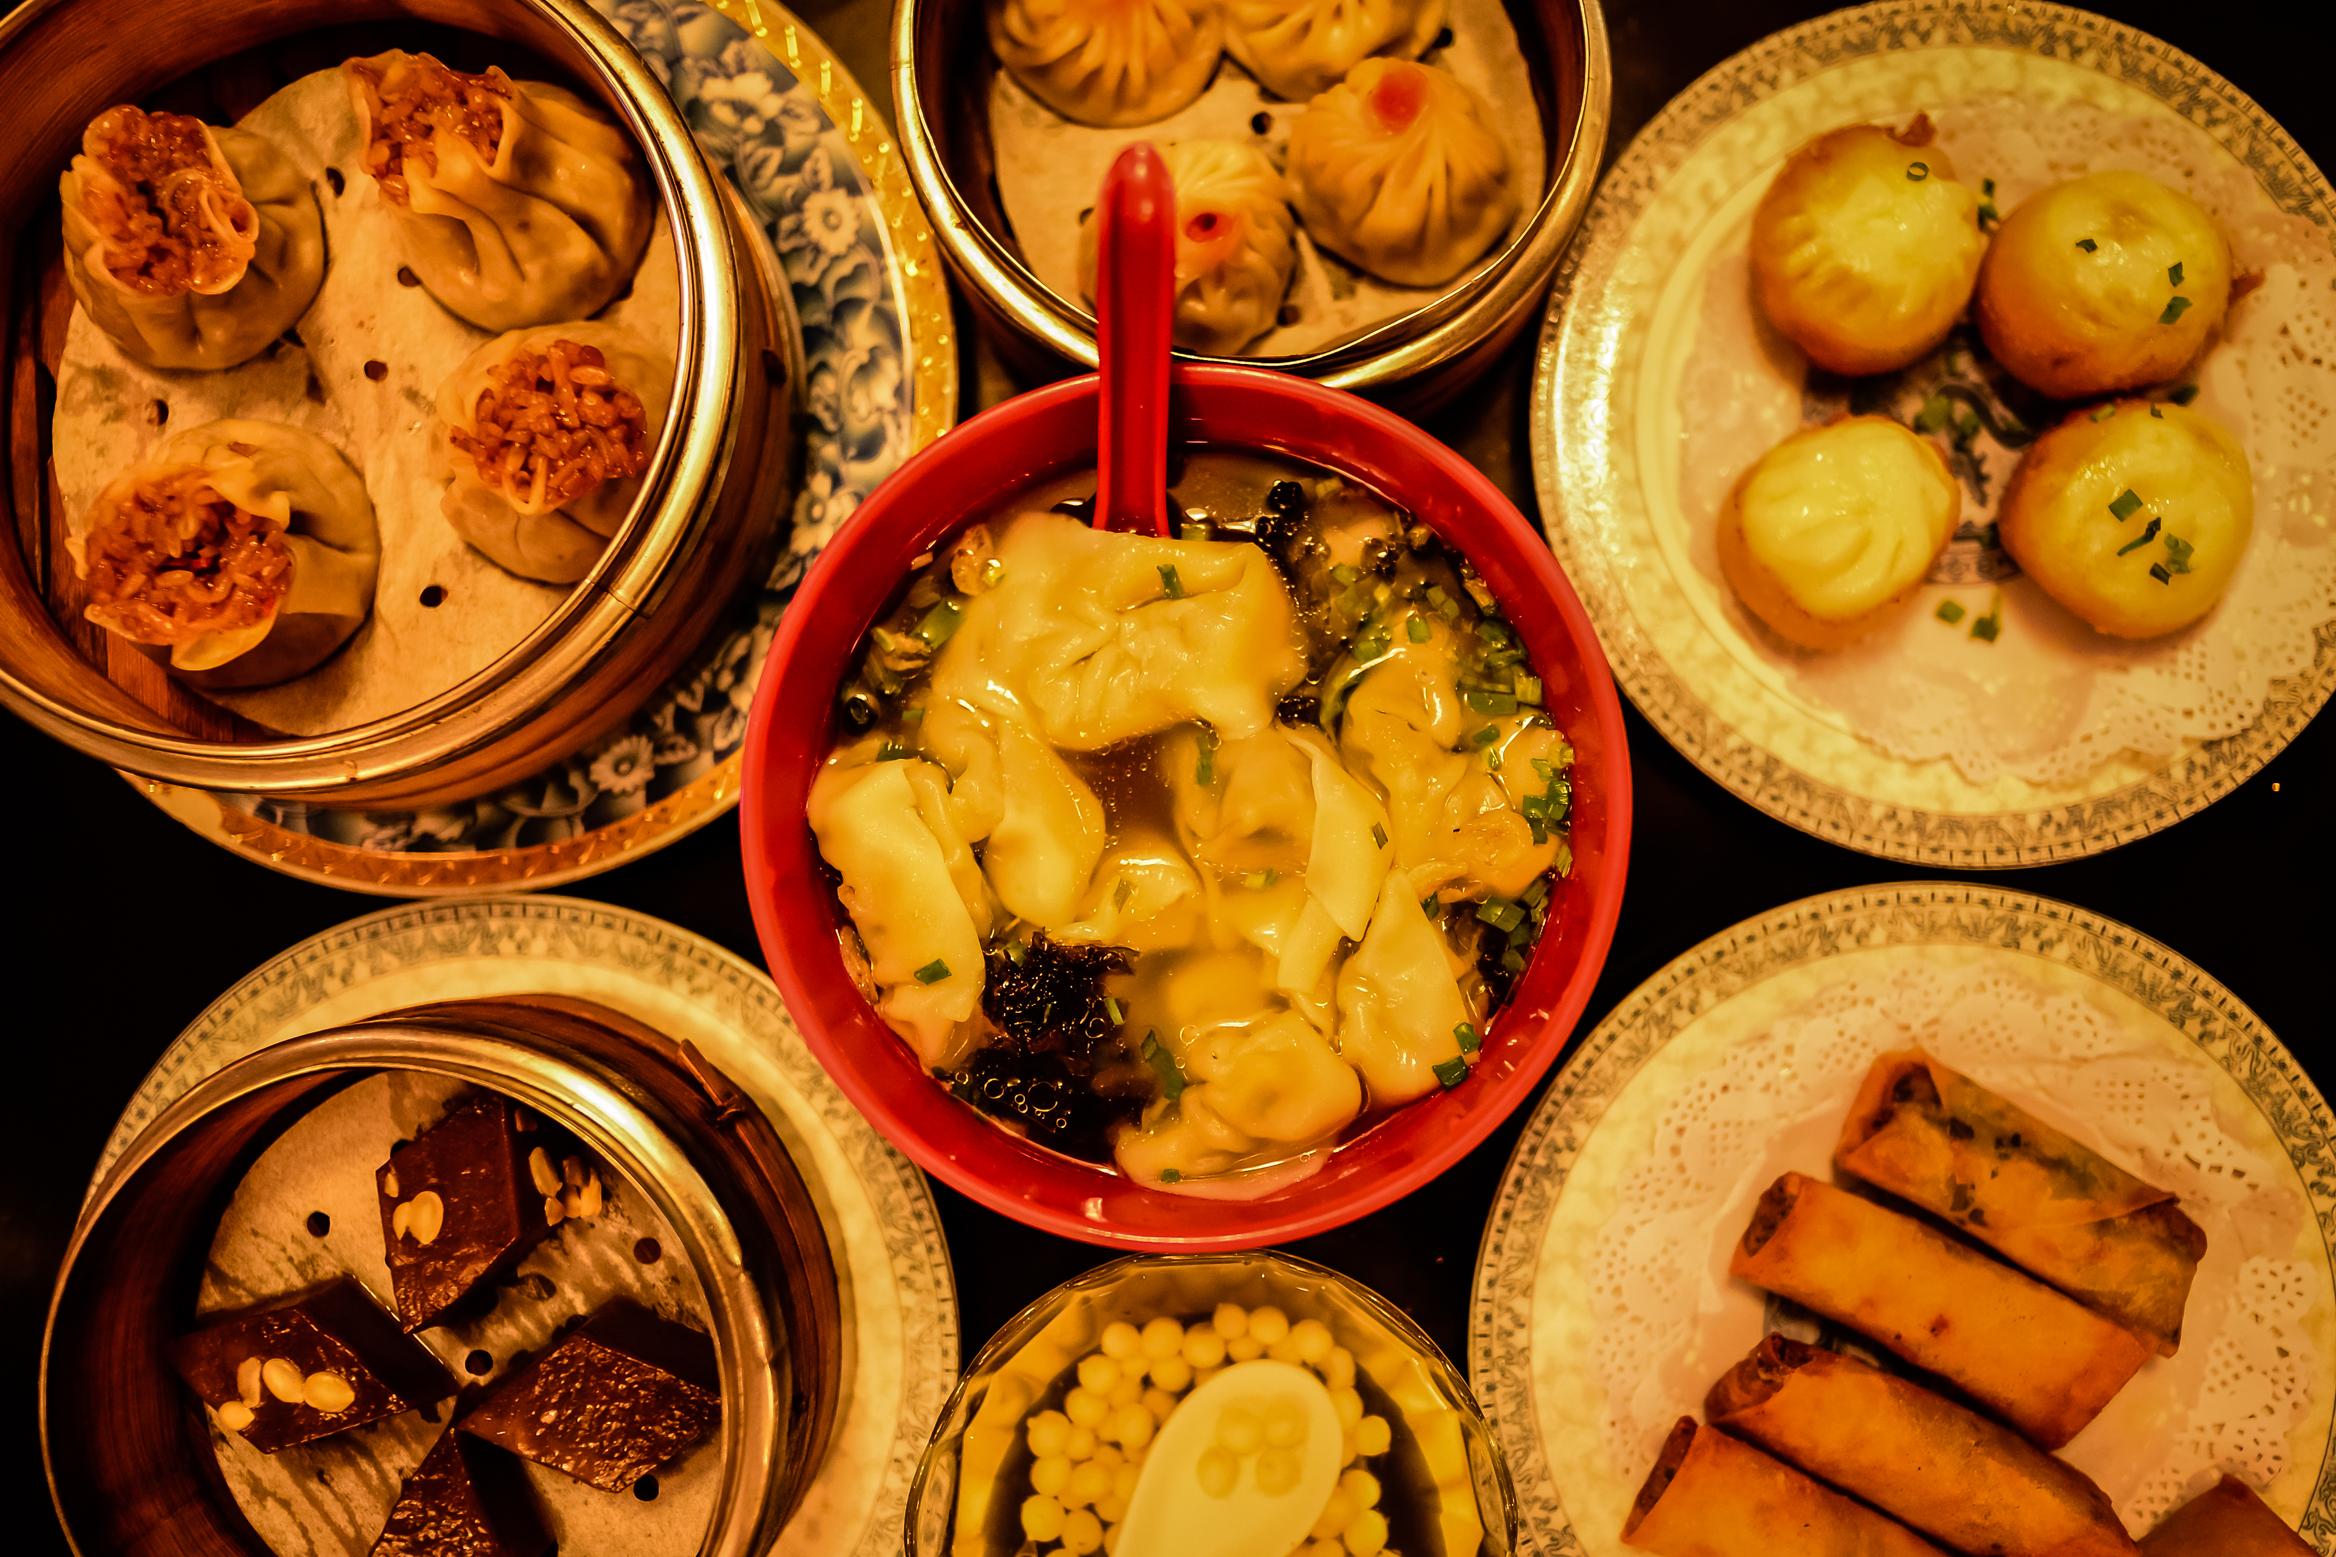 【携程美食林】苏州松鹤楼(观前街店)餐馆,松鹤楼是目前苏州地区历史最为悠久、饮誉海内外的正宗苏帮菜馆。它是…